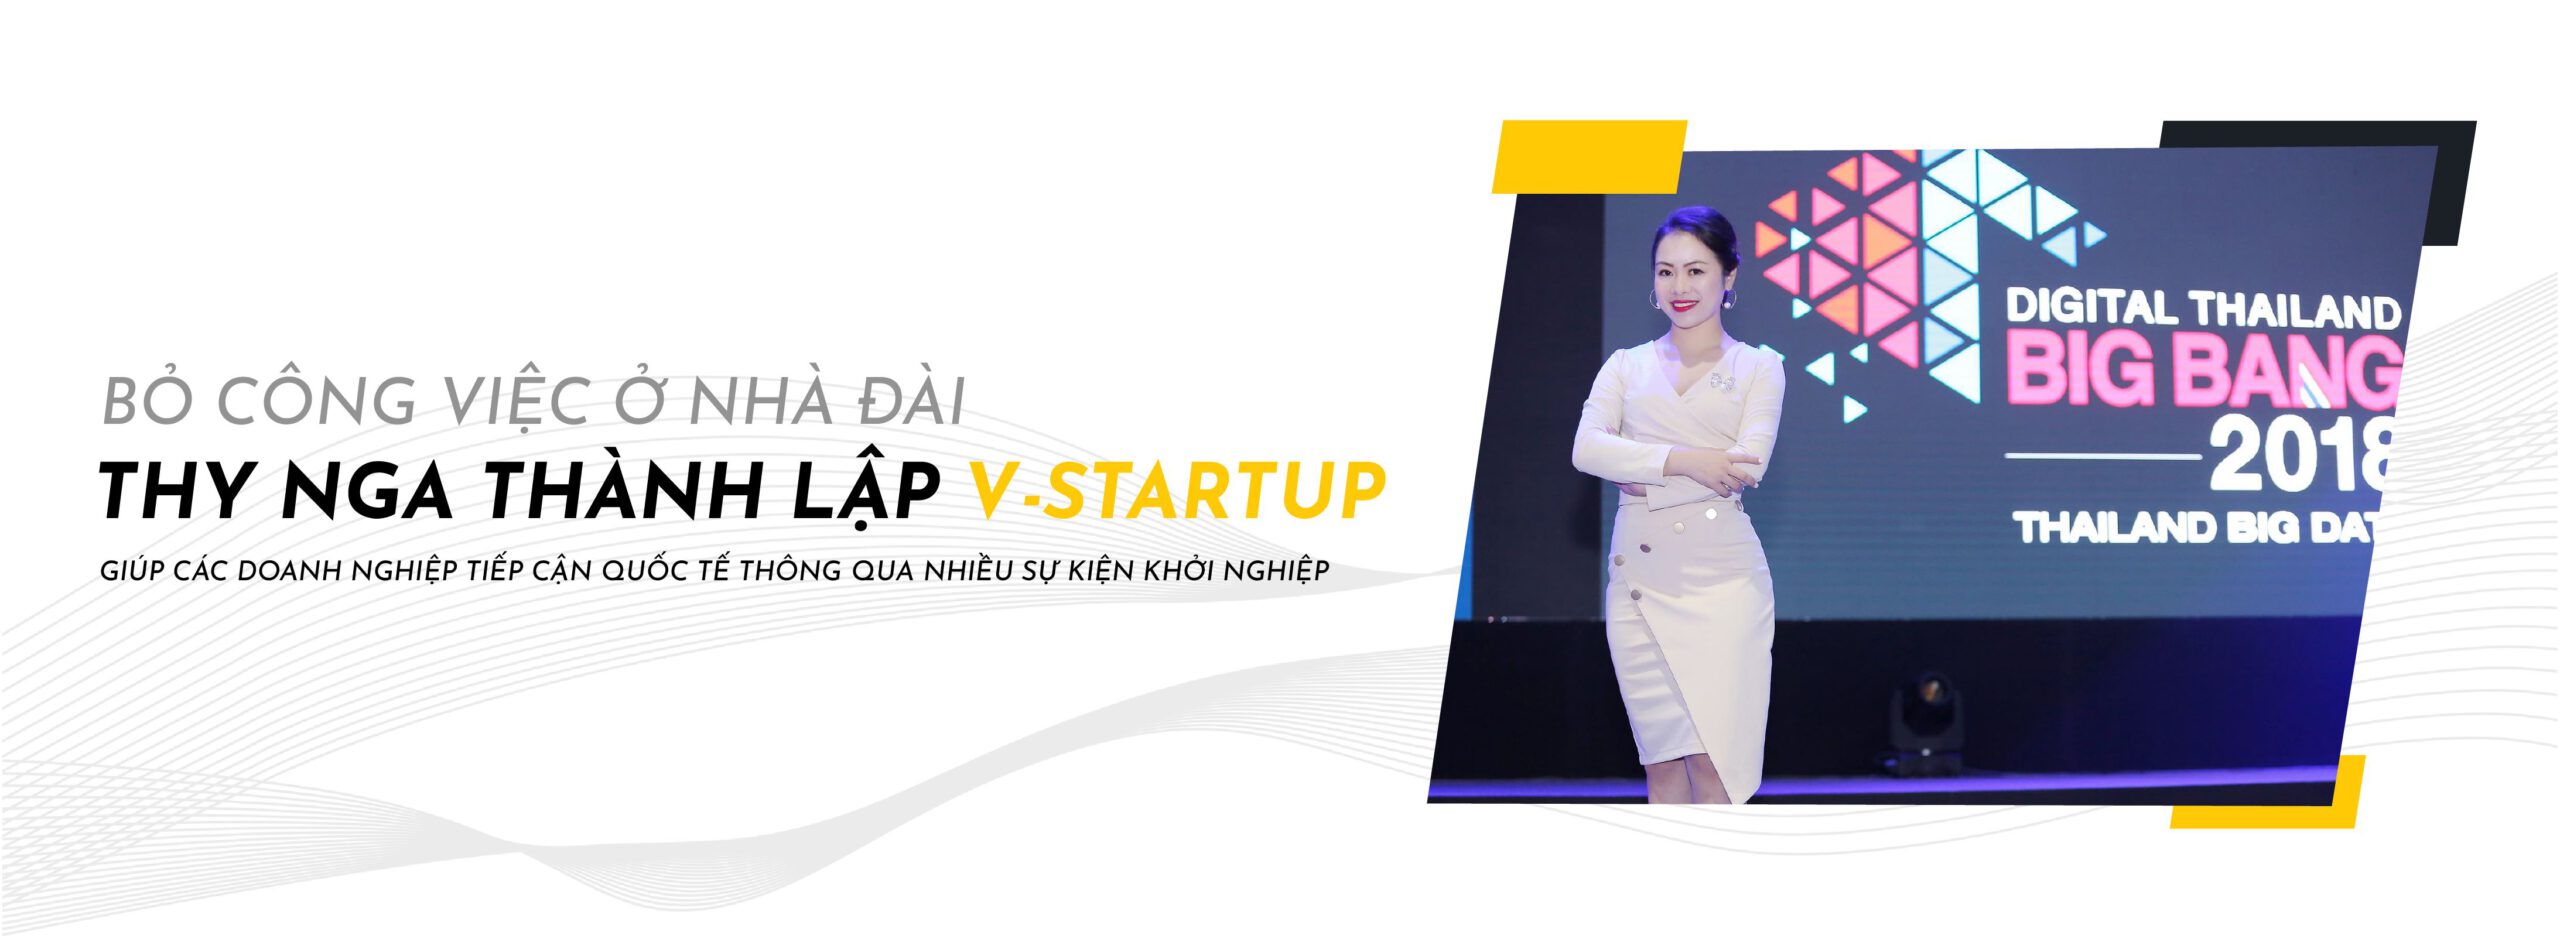 Thy Nga trong một sự kiện khởi nghiệp tại Thái Lan V-Startup tham gia điều phối.